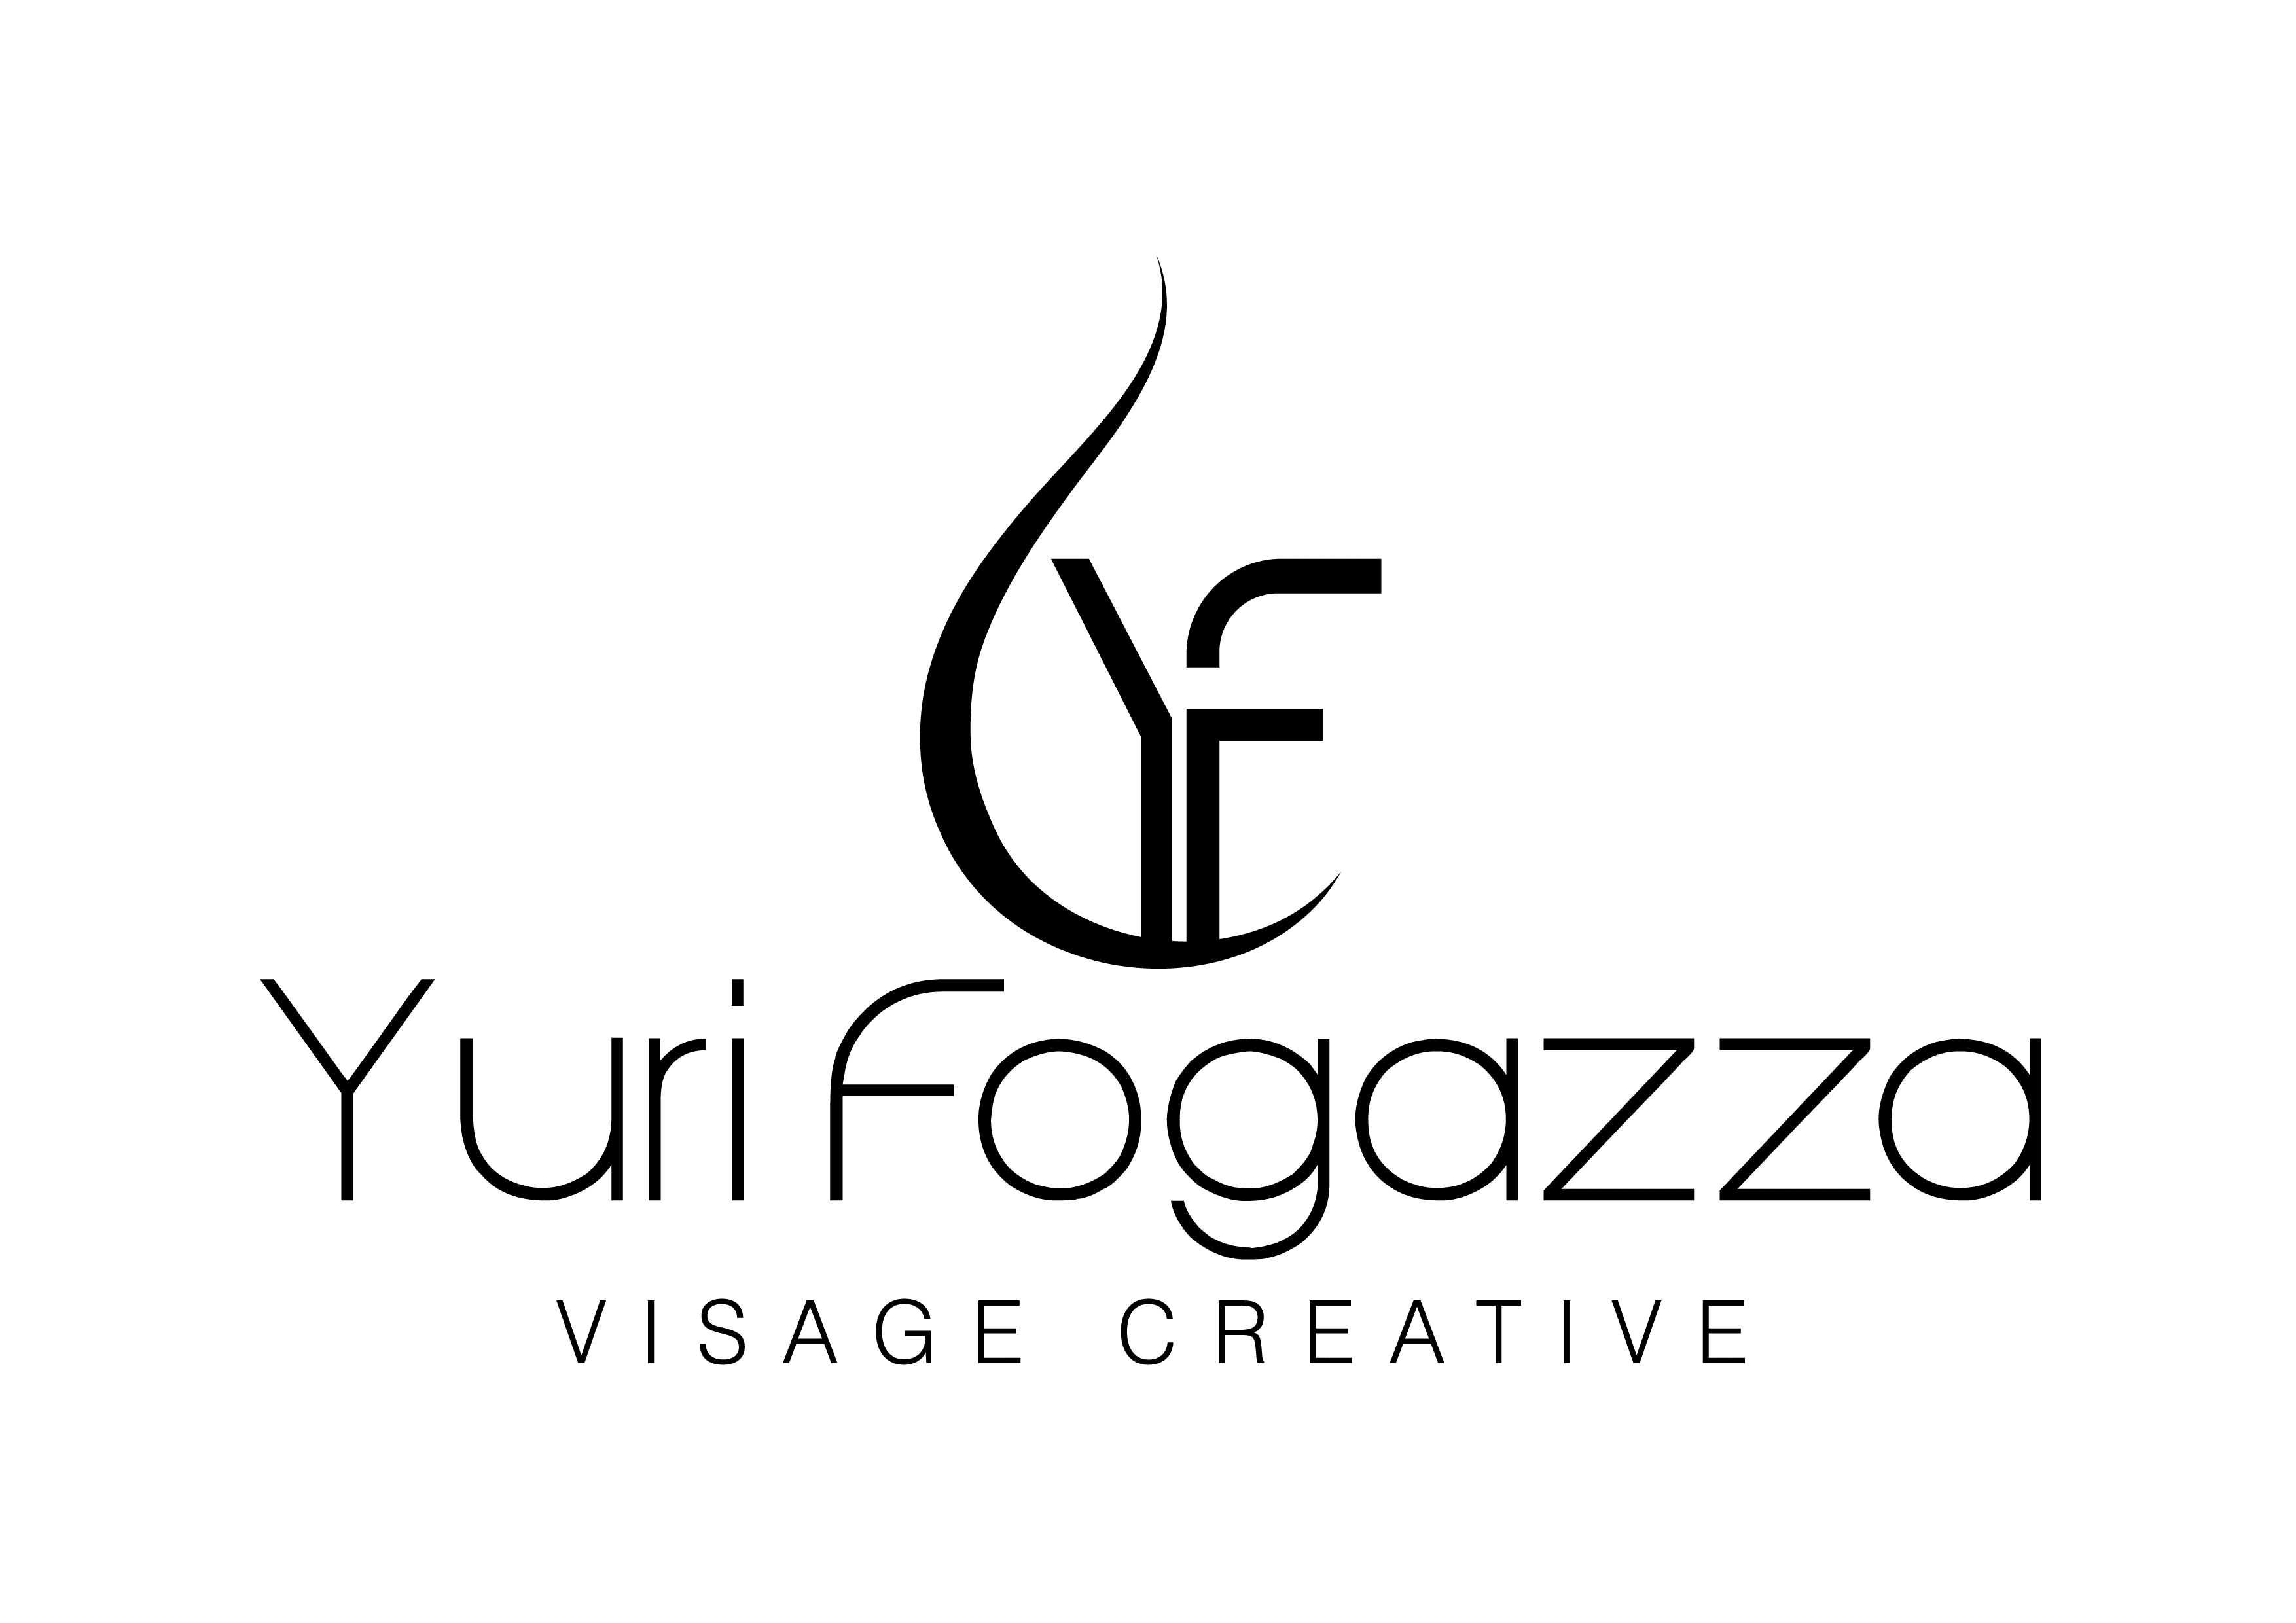 Yuri Fogazza Visage Creative